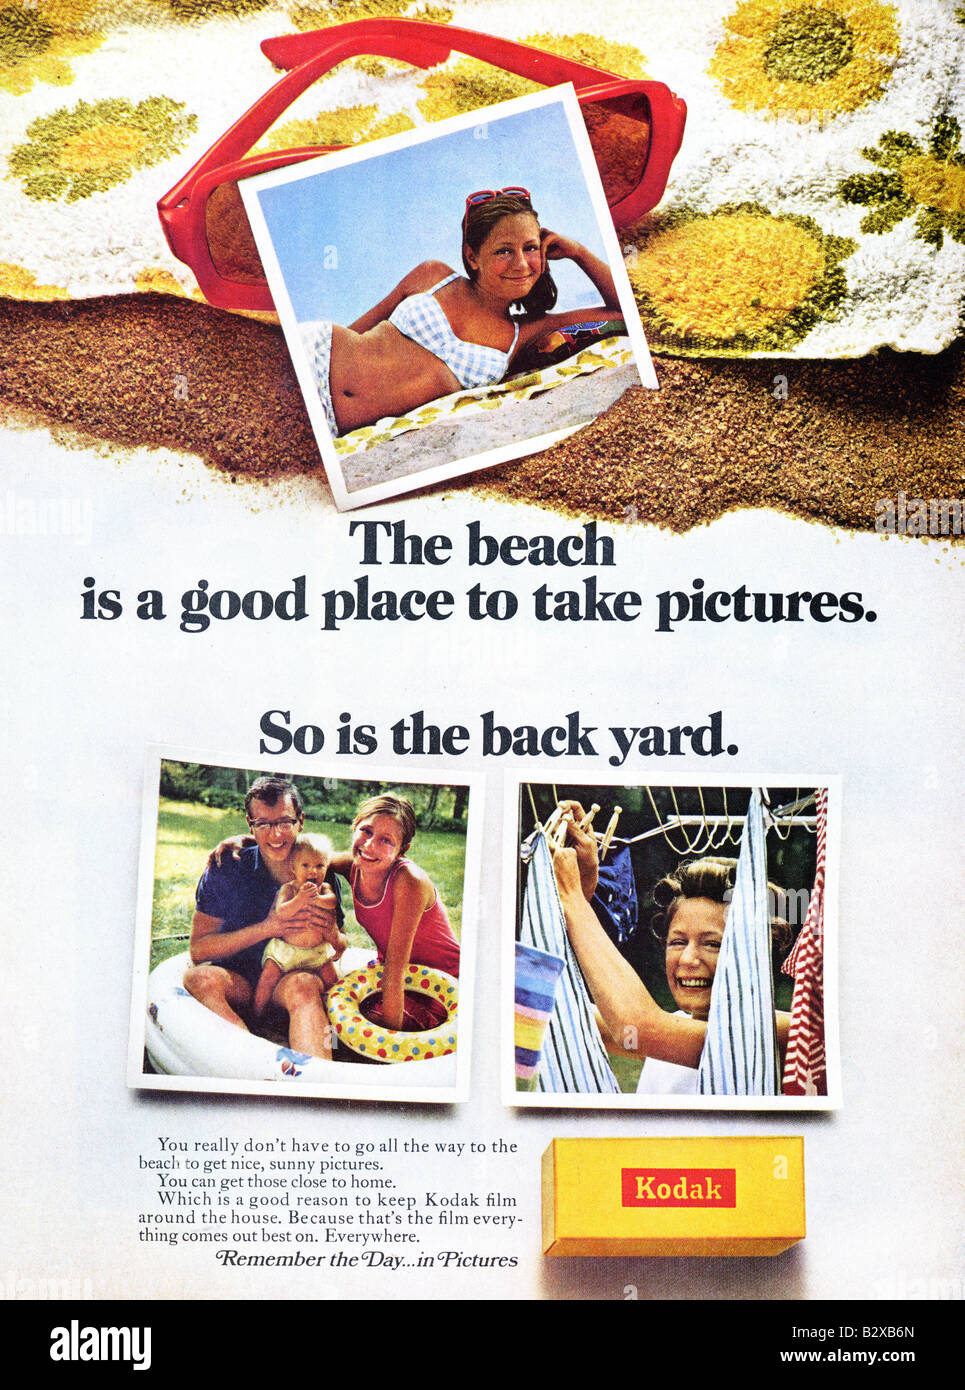 1968 amerikanischer Werbung für Kodak-Film. NUR ZU REDAKTIONELLEN ZWECKEN Stockfoto